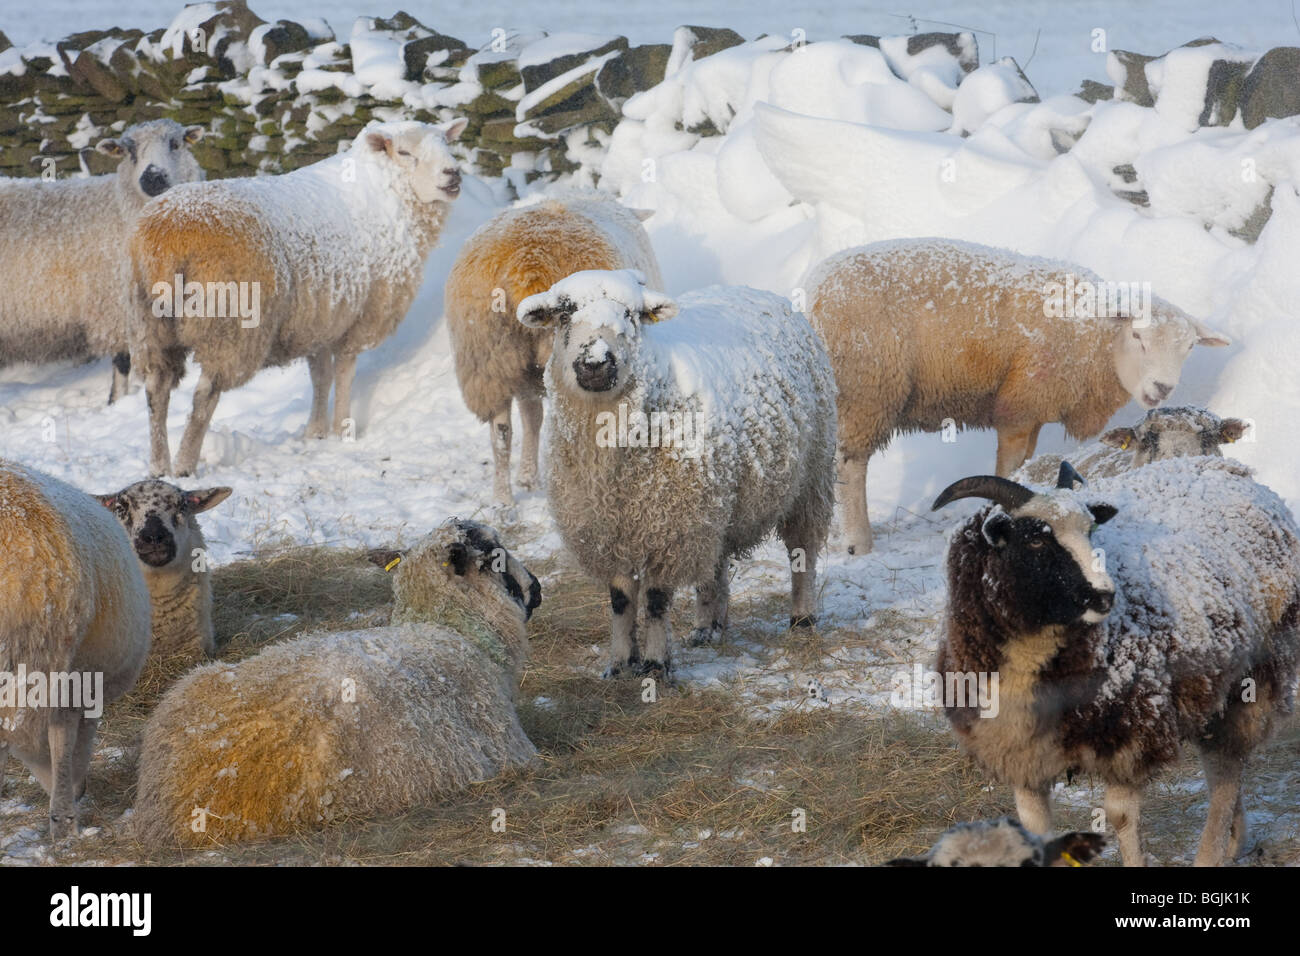 Pennine hill farm sheep in snowy field in winter Stock Photo